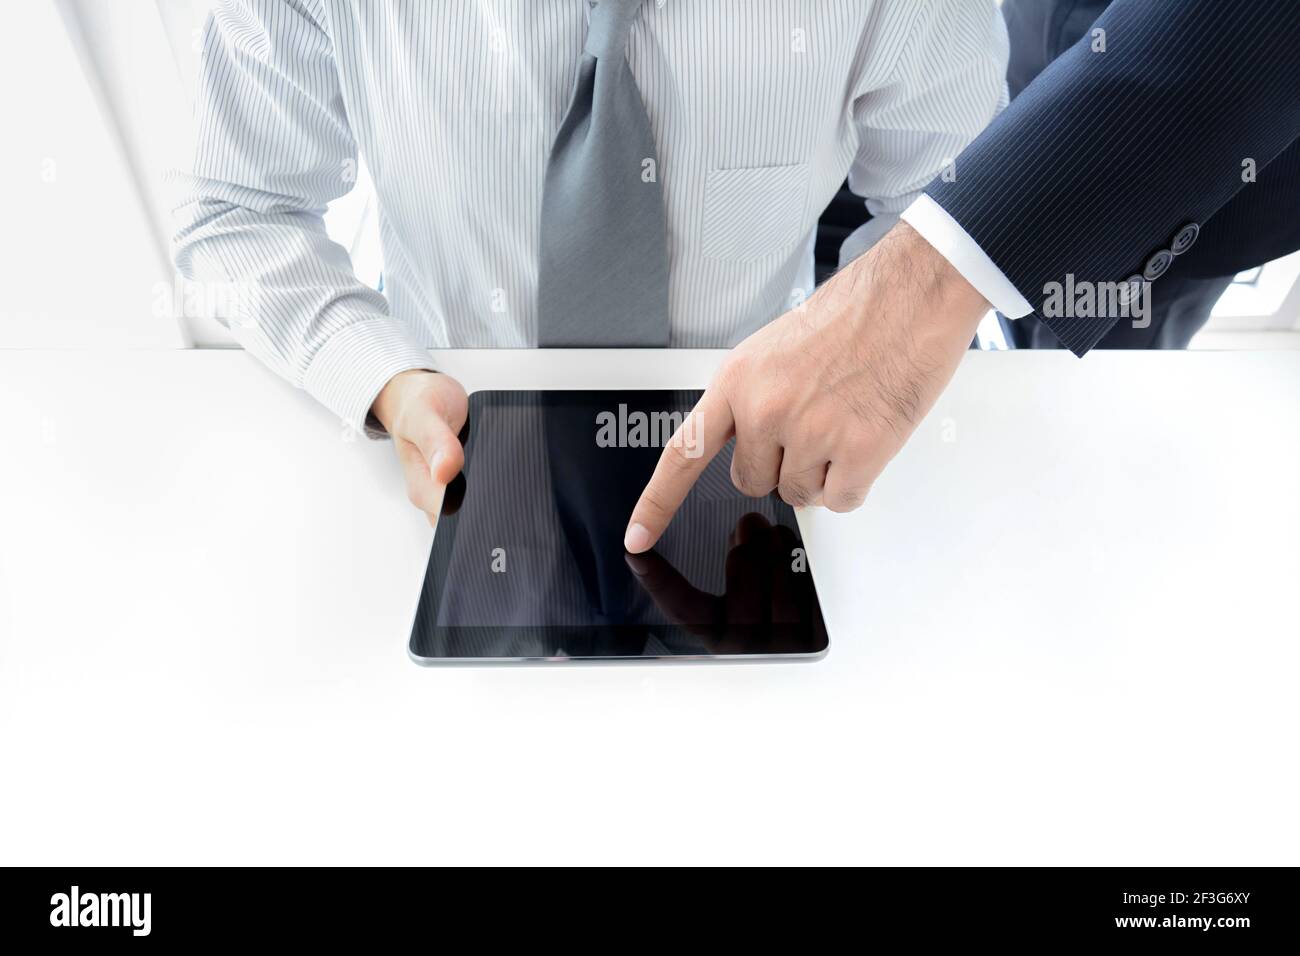 Deux hommes d'affaires utilisant une tablette avec une main touchant l'écran, concept de discussion d'affaires Banque D'Images